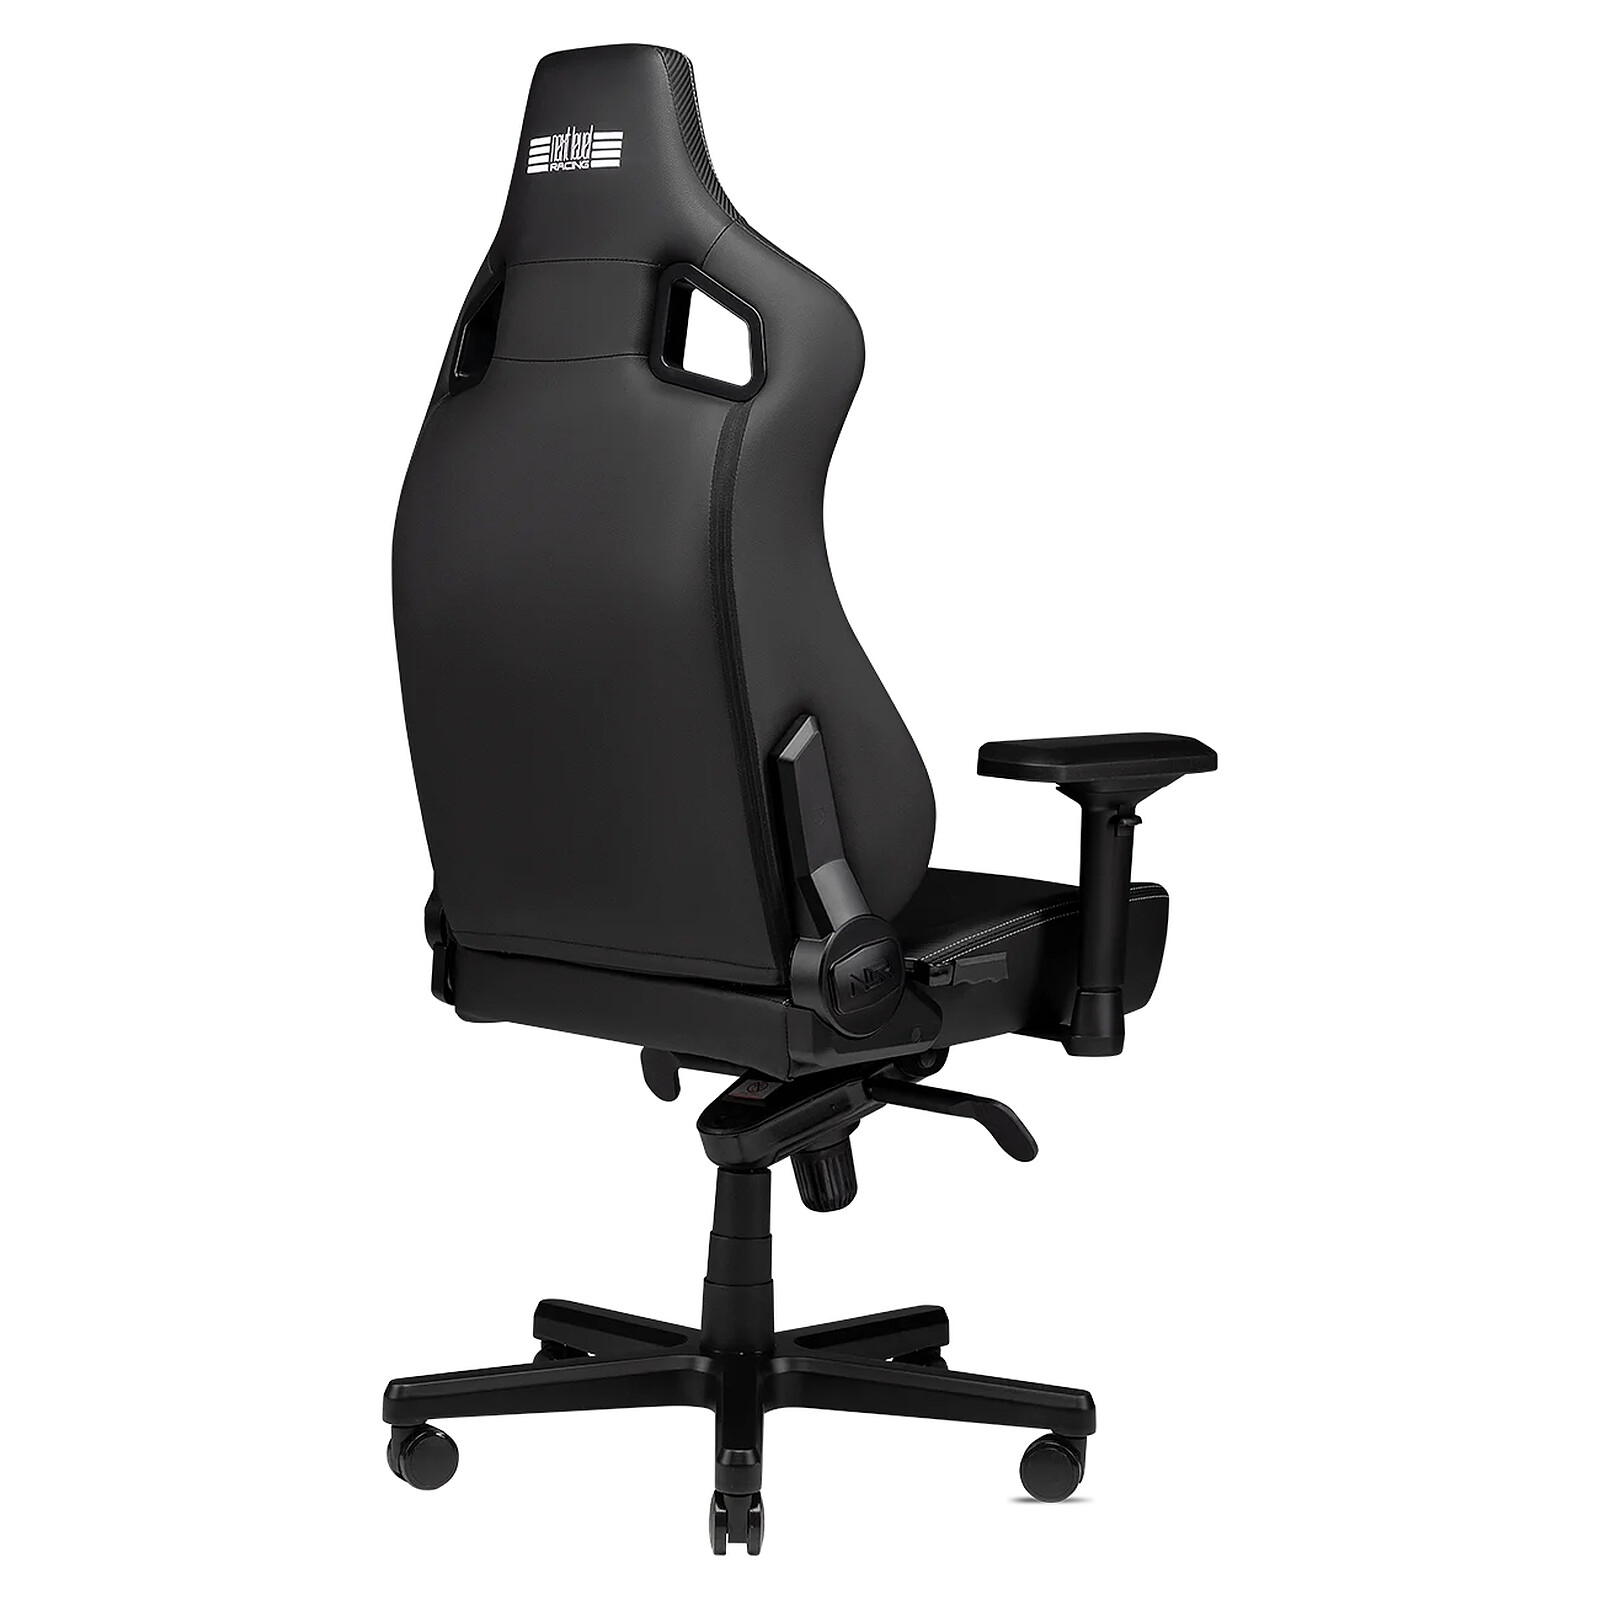 TC100 RELAXED, la silla gaming de Corsair amplia y ergonómica